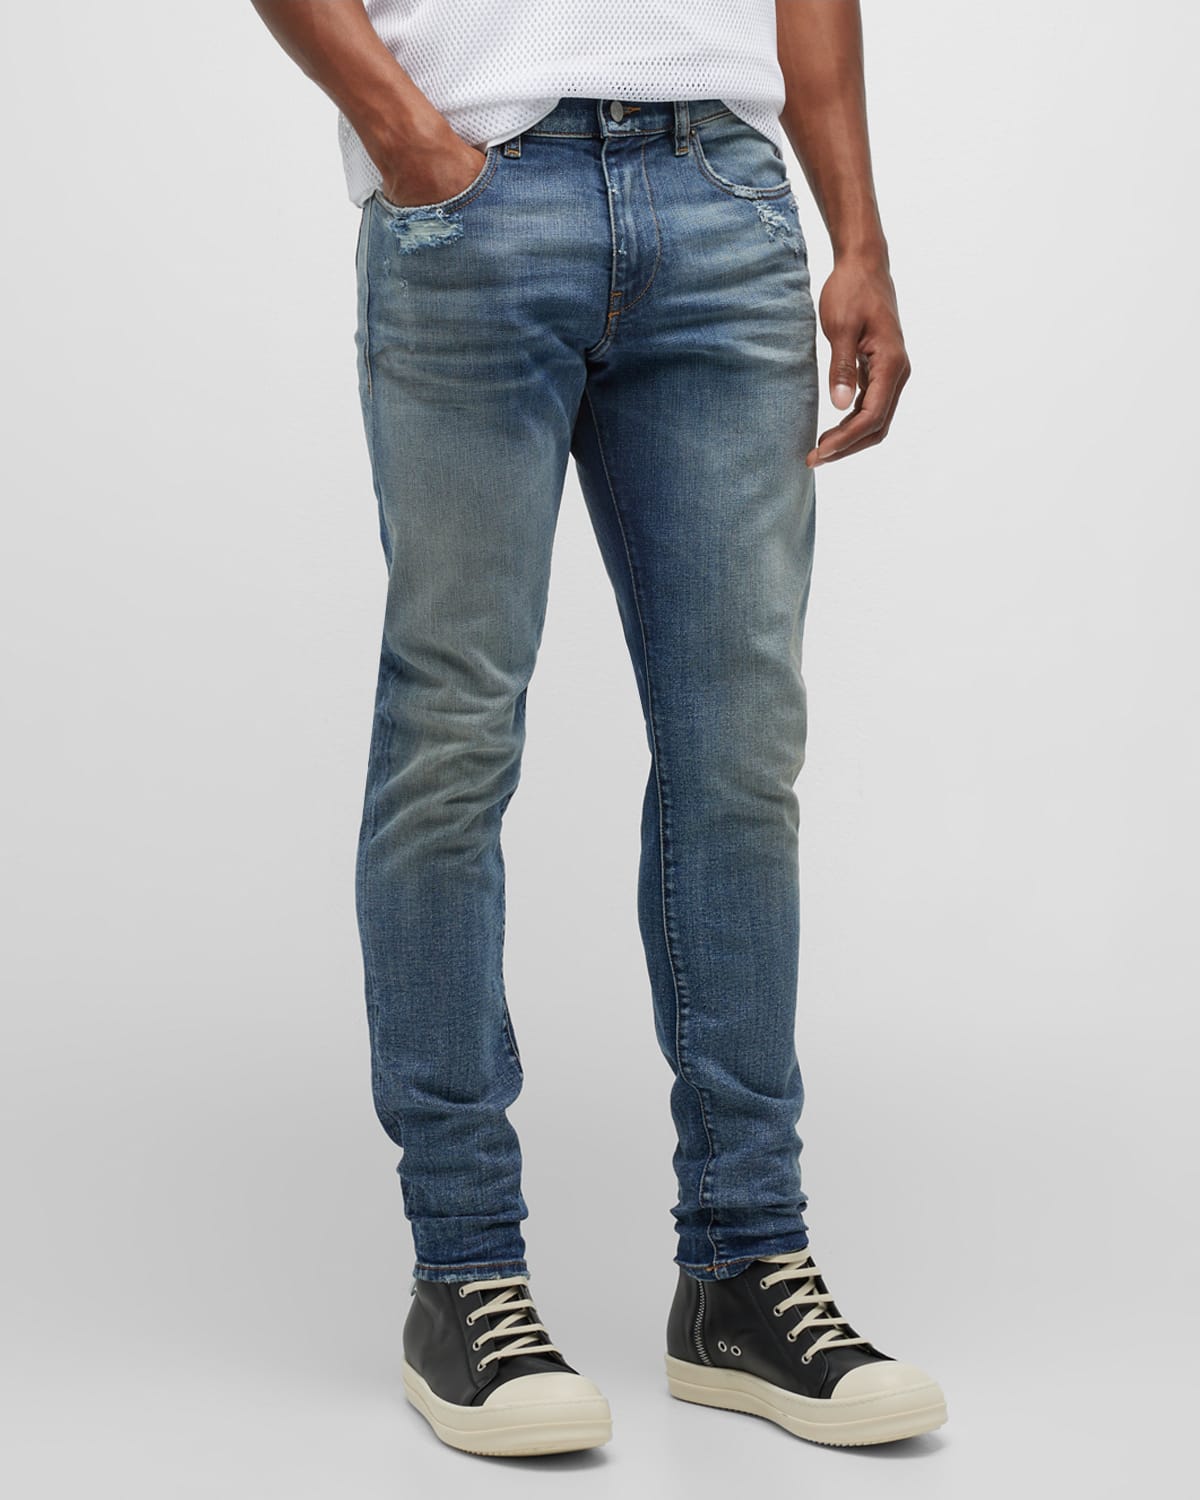 Oude man Verlaten Confronteren Diesel Denim Jeans | Neiman Marcus